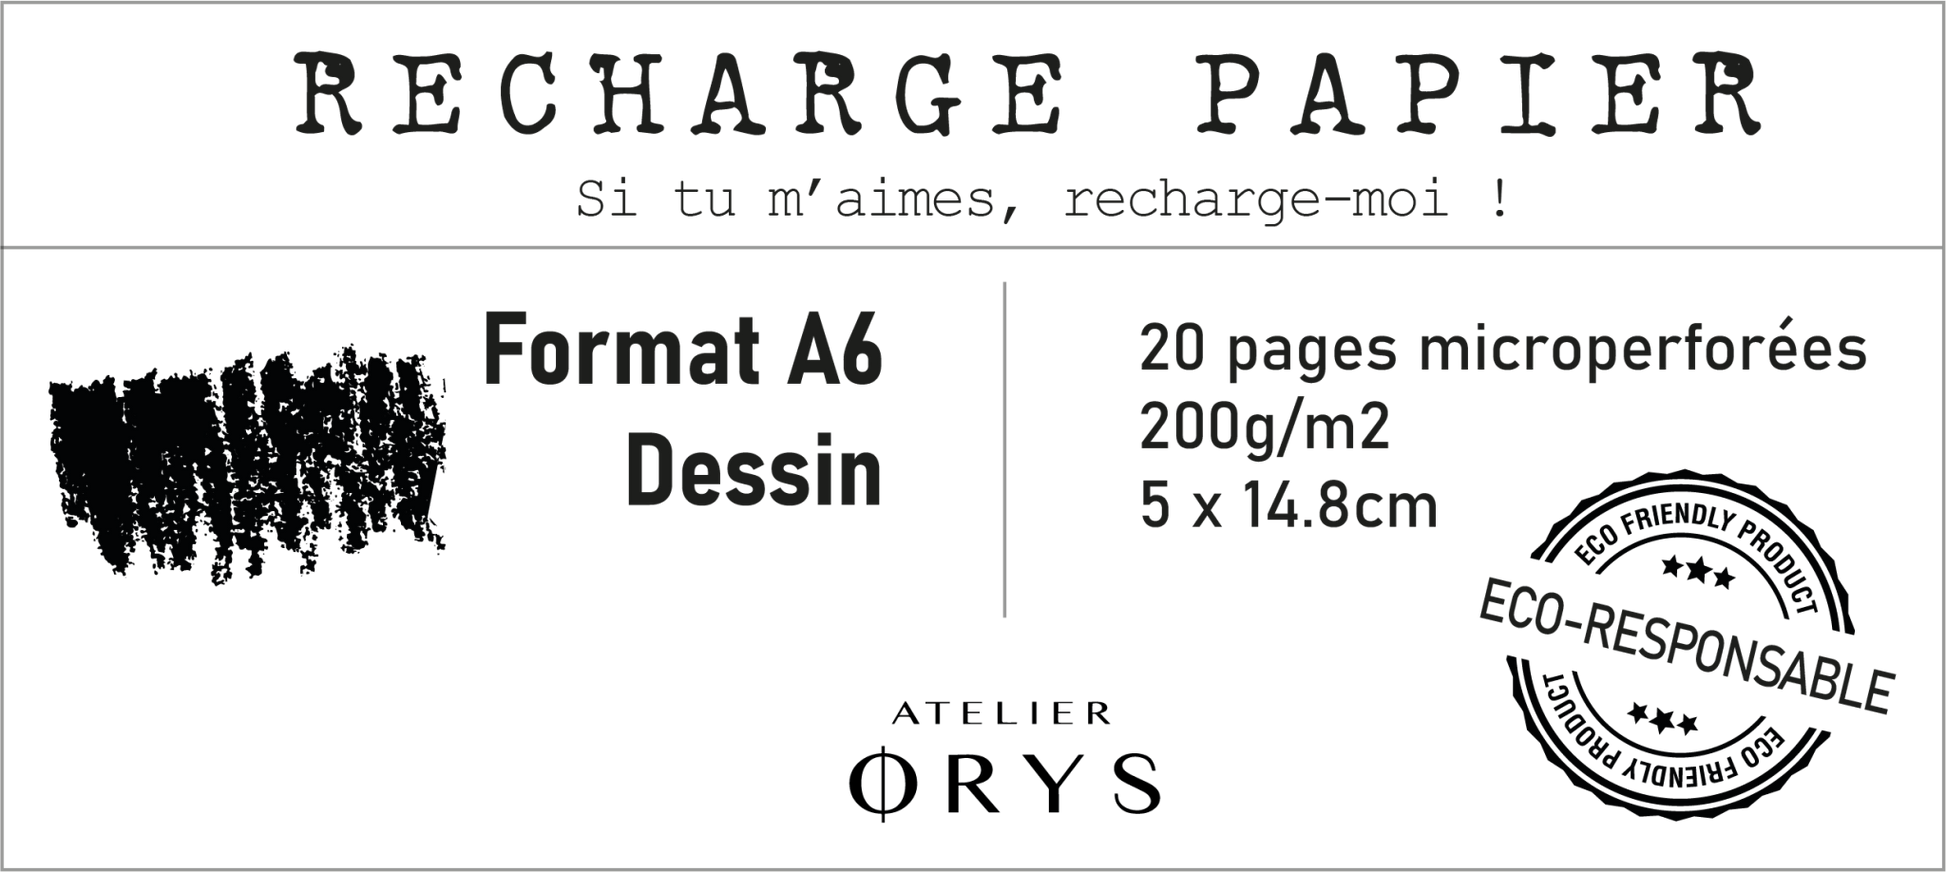 Recharge petit carnet - Papier dessin - Atelier ORYS